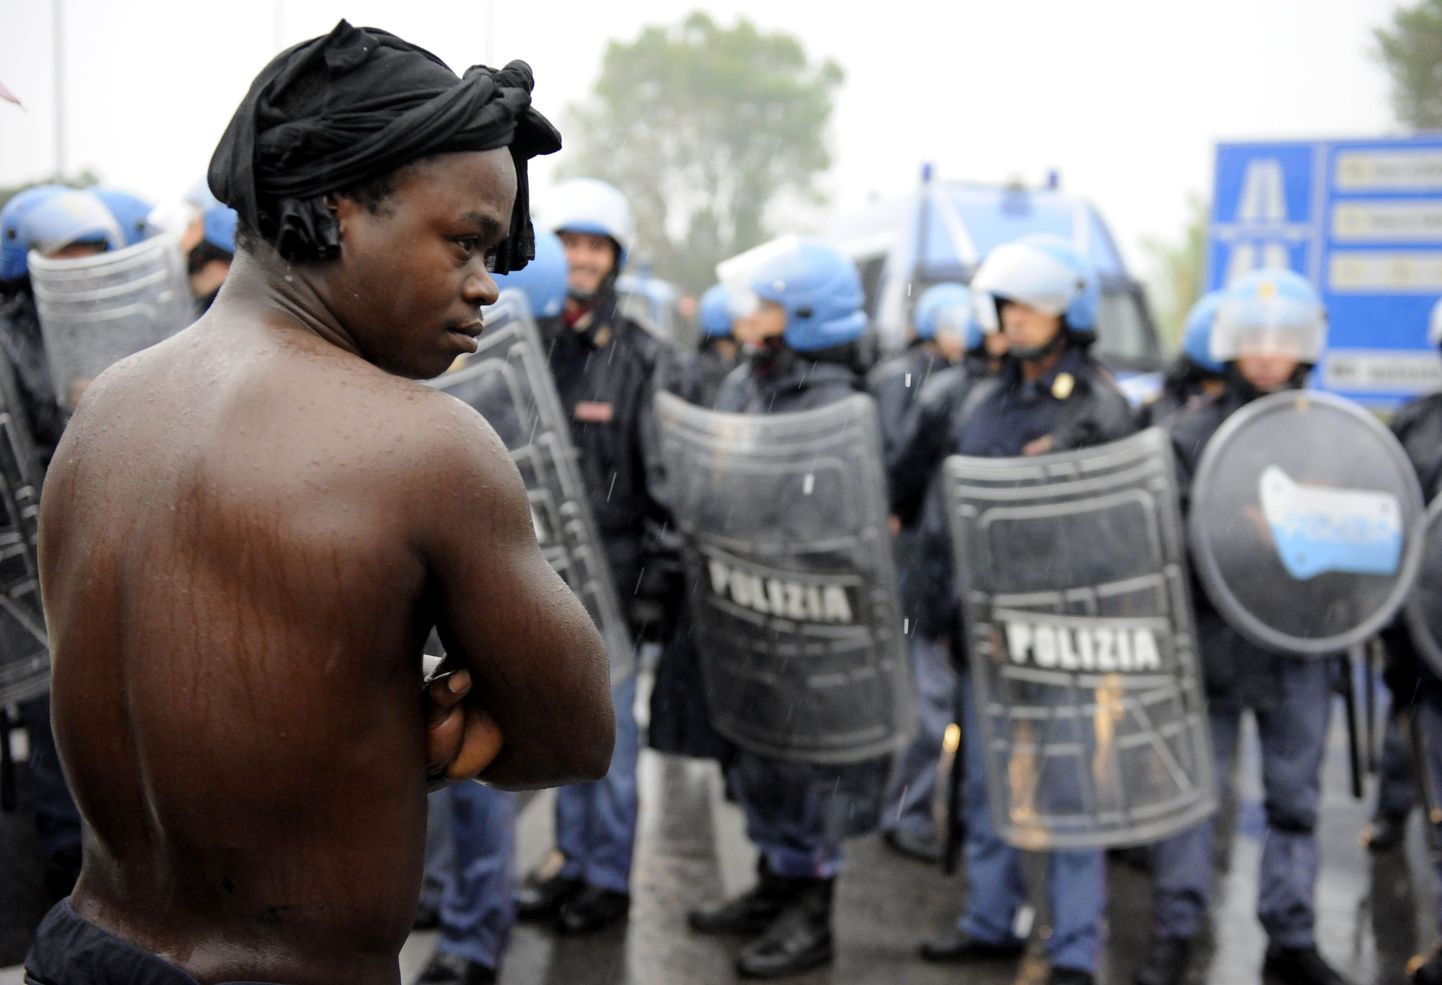 Itaalia märulipolitseinikud valvamas aafriklaste meeleavaldust Castelvolturno linnakeses Napoli lähedal.